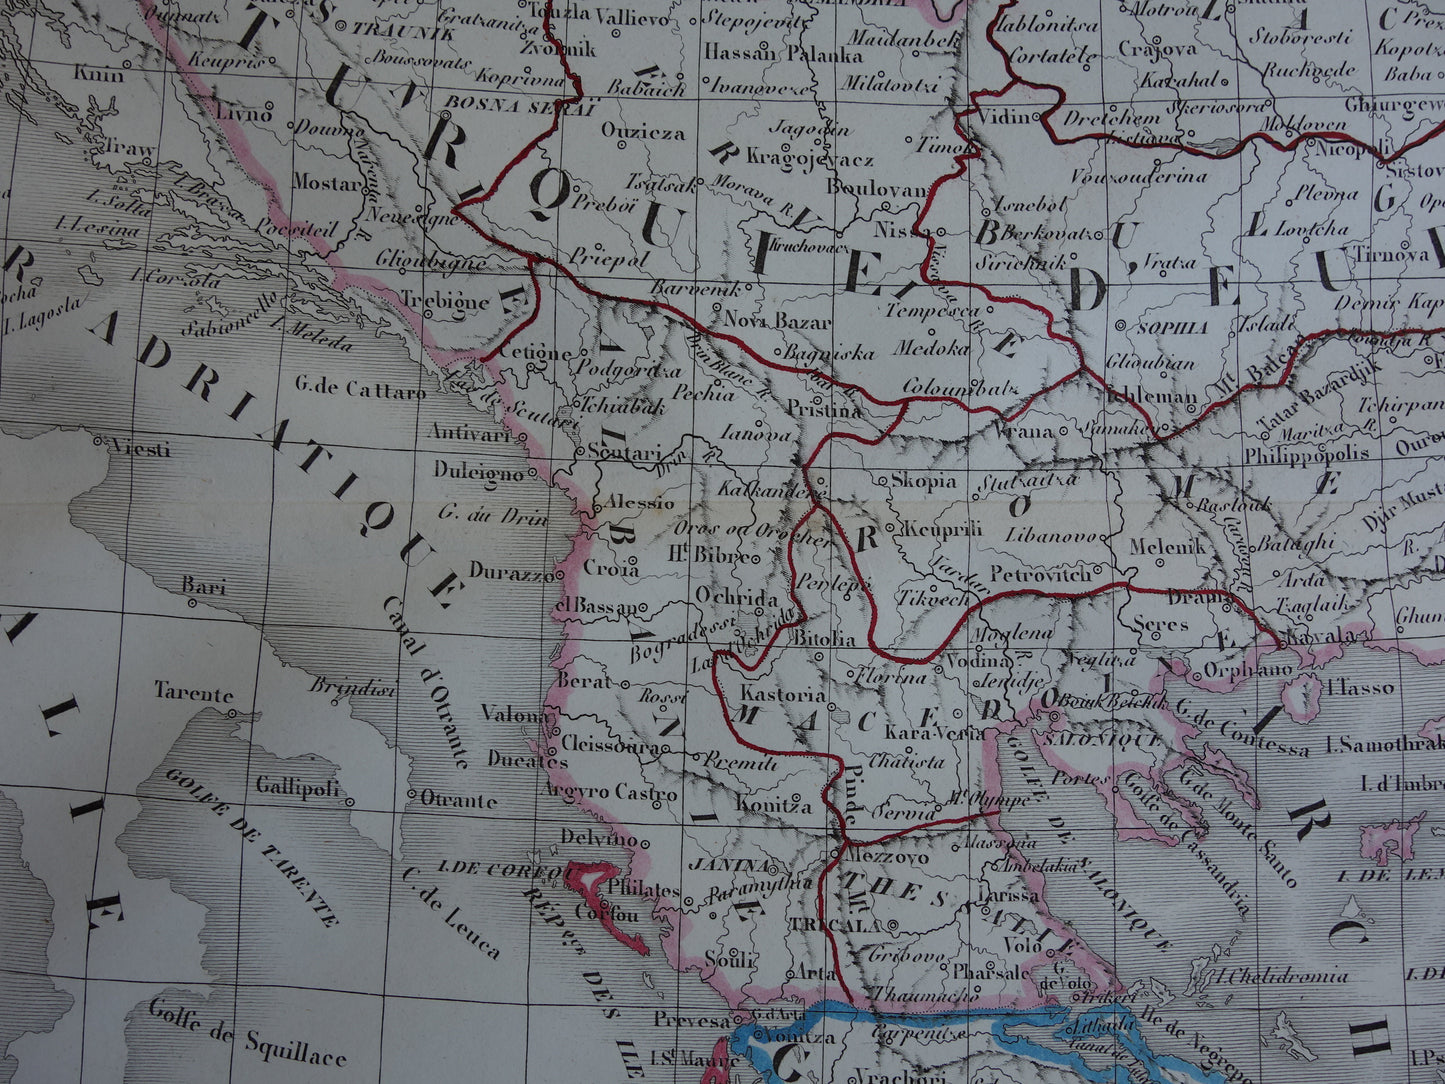 Oude kaart van Europees Turkije en Griekenland uit 1849 originele 170+ jaar oude Franse landkaart Servië Bulgarije Roemenië Balkan Ottomaanse Rijk